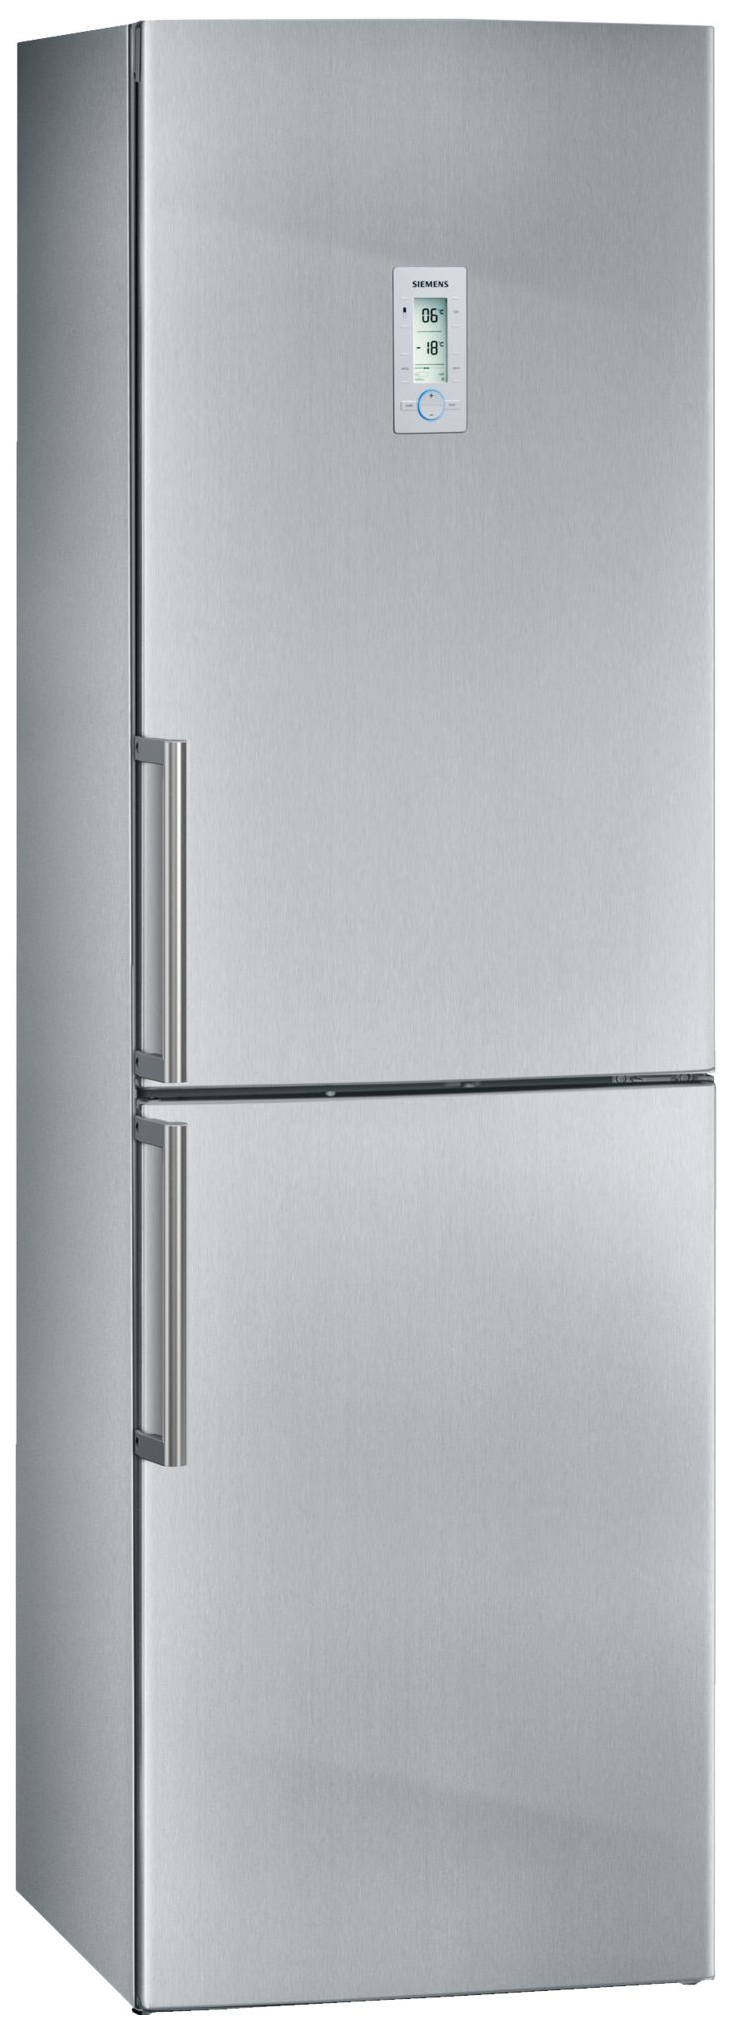 Холодильник Siemens KG39NAI26R серебристый фаскосниматель кромкорез портативный электрический фс26 мотор siemens